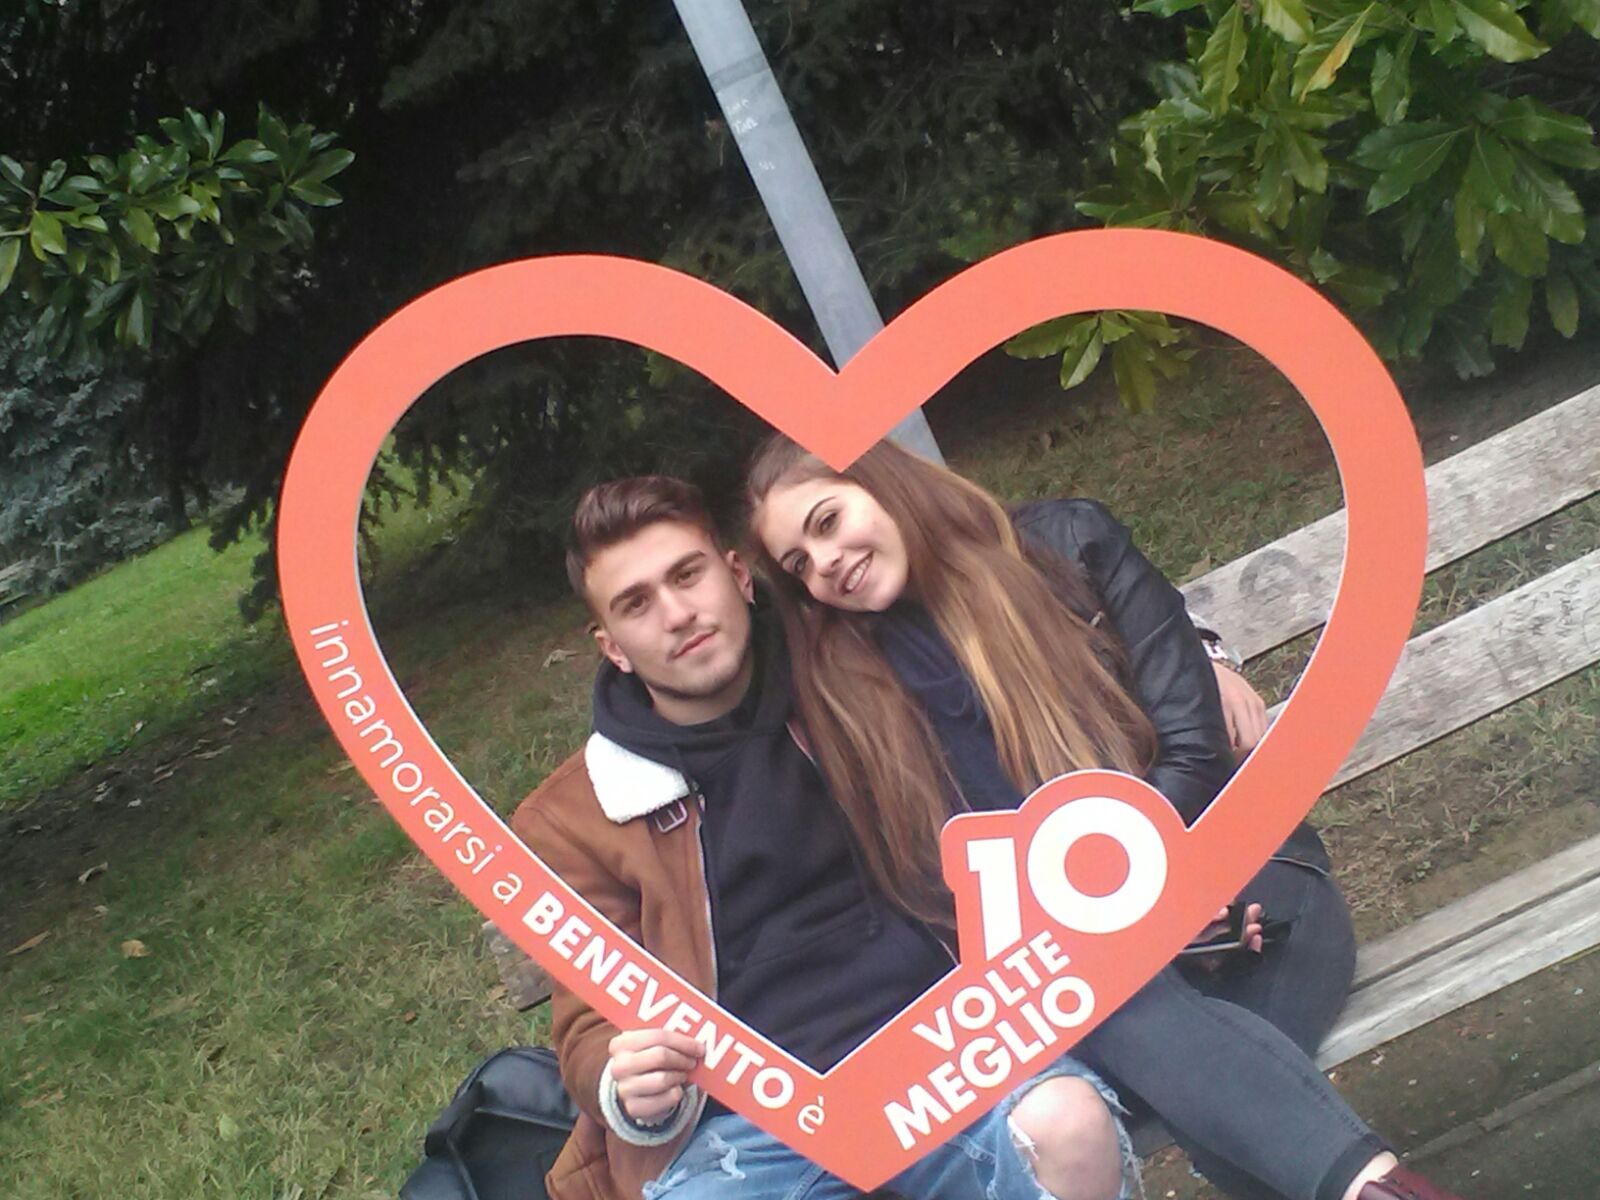 Benevento| San Valentino, 10 Volte Meglio: tra selfie e felicità